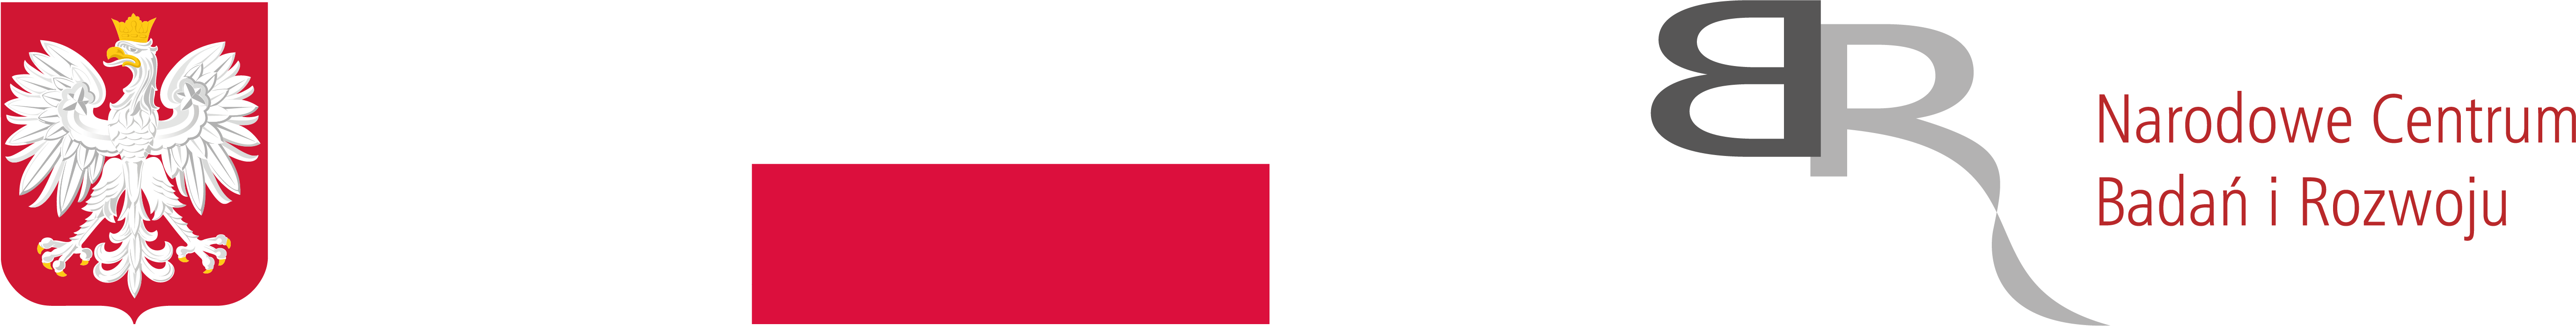 Flaga RP, godło RP, logo NCBiR